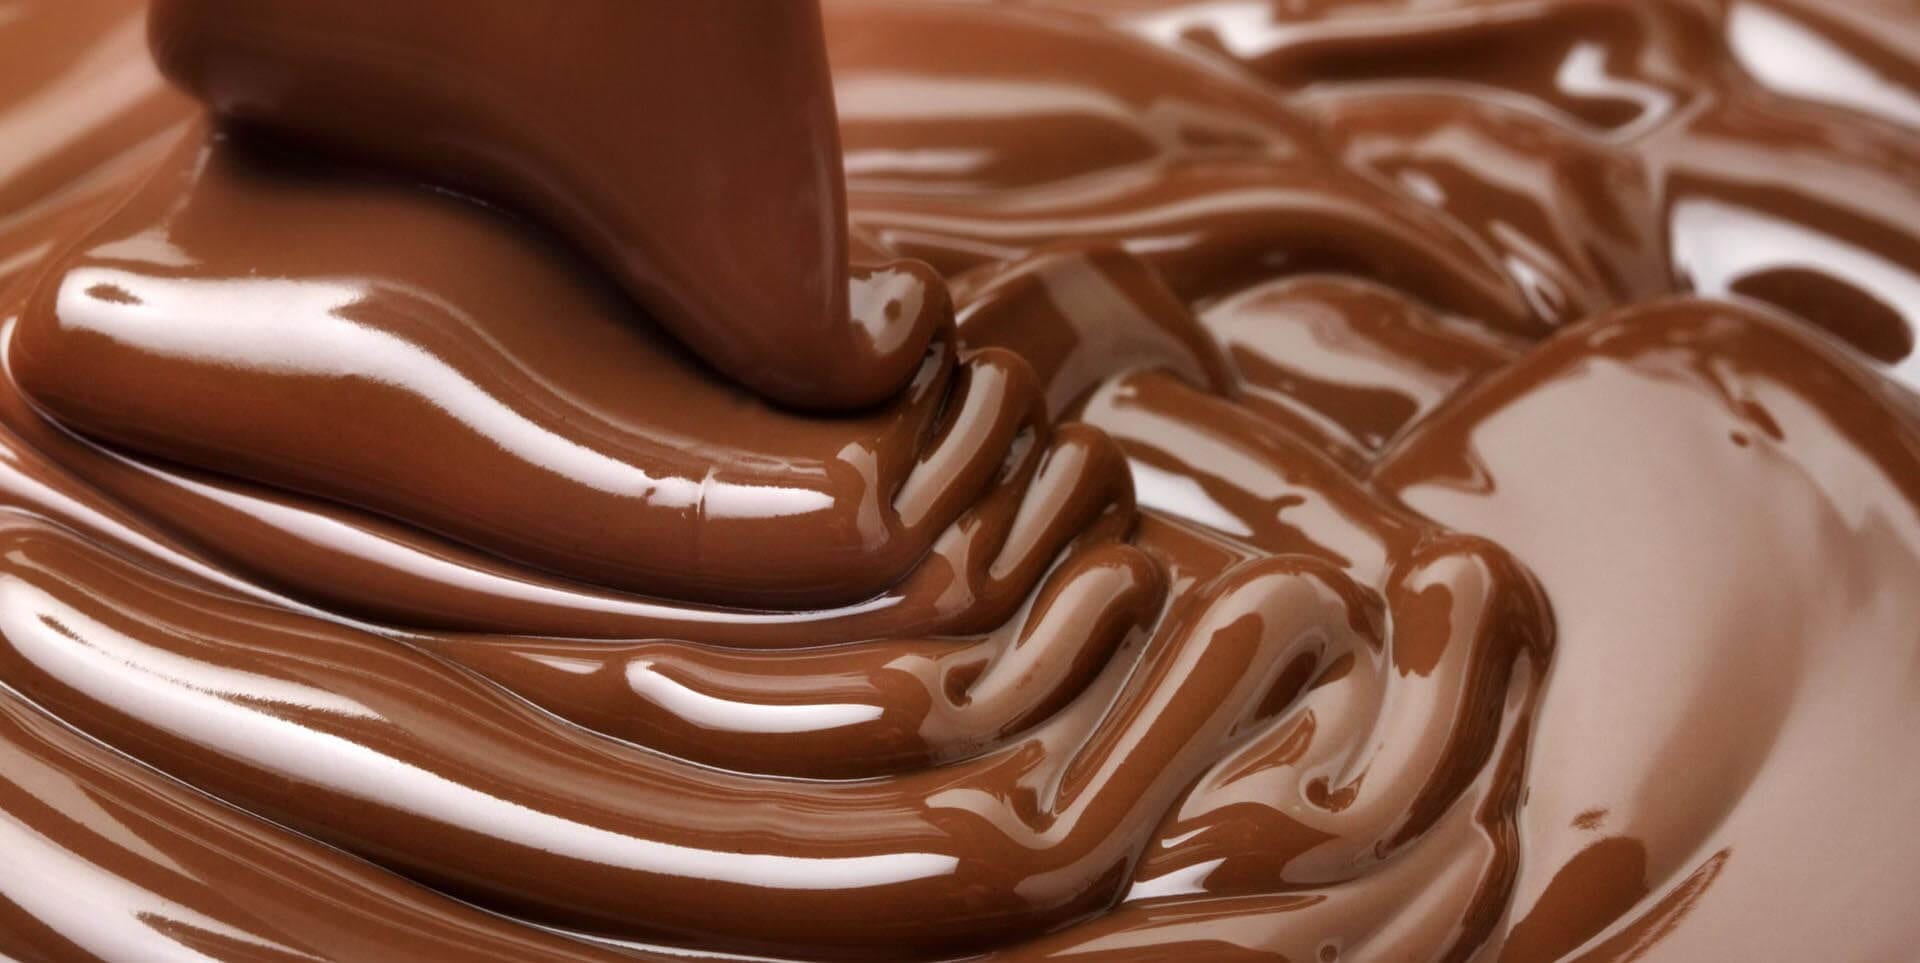 Professionnel Tempereuse a Chocolat Fondoir à chocolat électrique en Acier Inoxydable Cuiseur pour Chocolat avec Contrôle de la Température 0℃~85℃/0℉~185℉ 500W 230V 